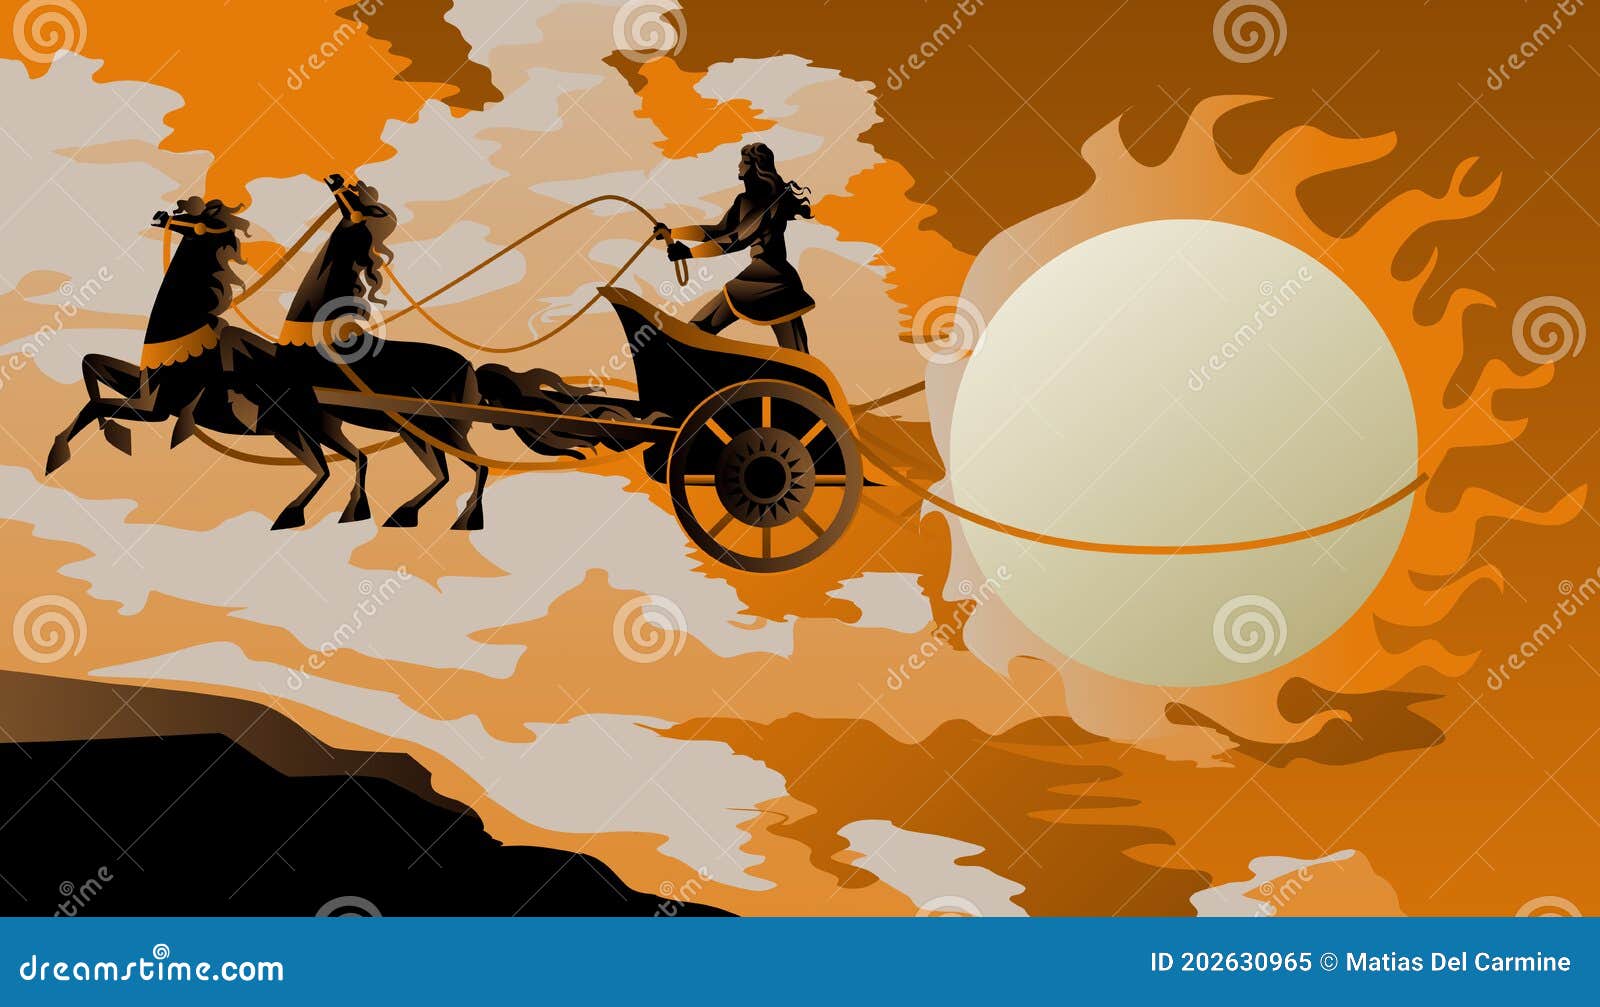 アポロンの馬車に乗るパエトーン - 世界はキラキラおもちゃ箱・2